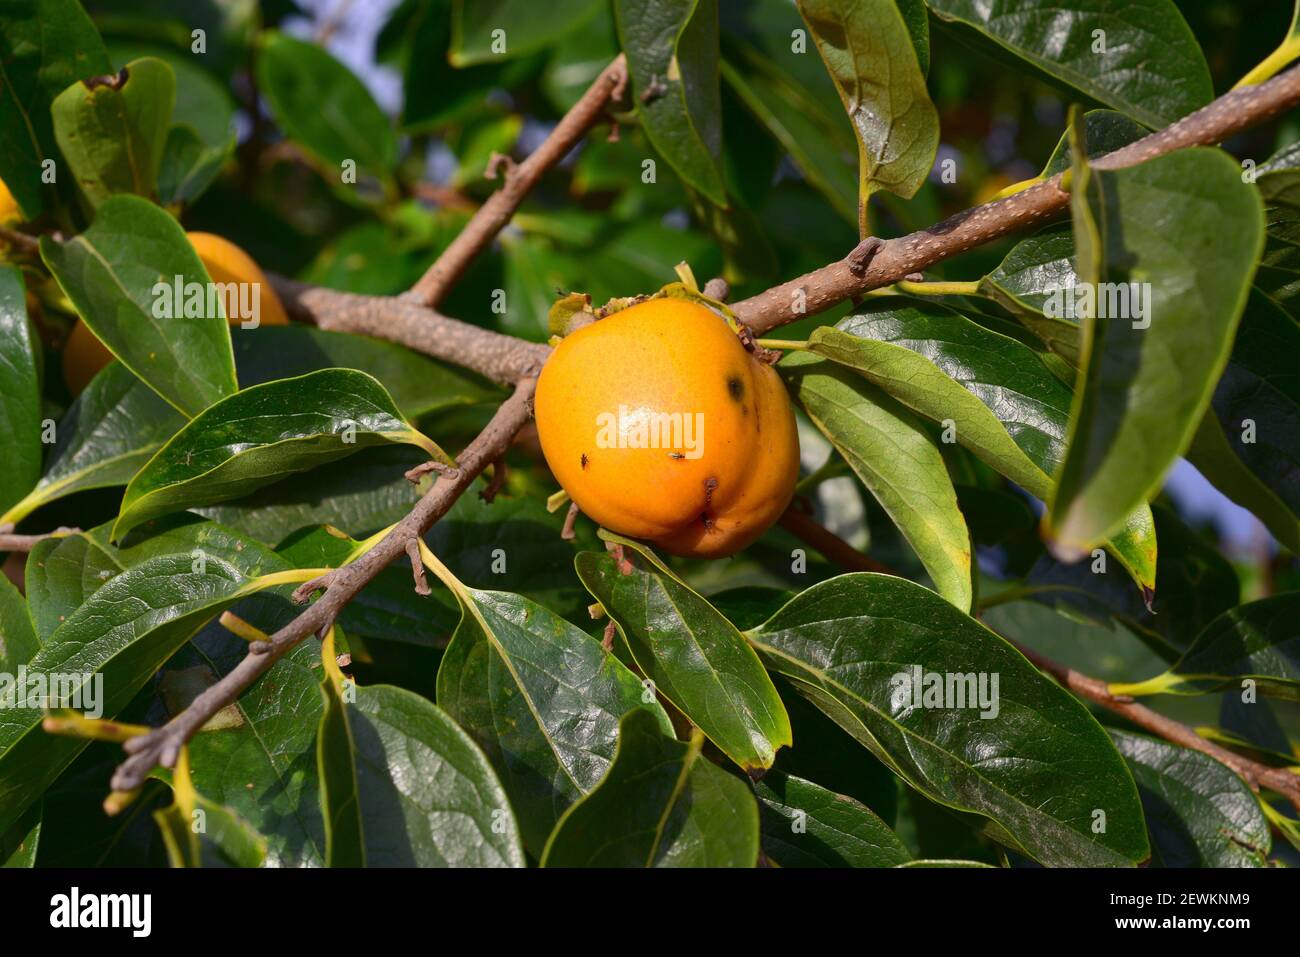 Chinesischer Persimmon oder orientalischer Persimmon (Diospyros kaki) ist ein Laubbaum aus Asien, der für seine essbaren Früchte weit verbreitet ist. Dieses Foto Stockfoto